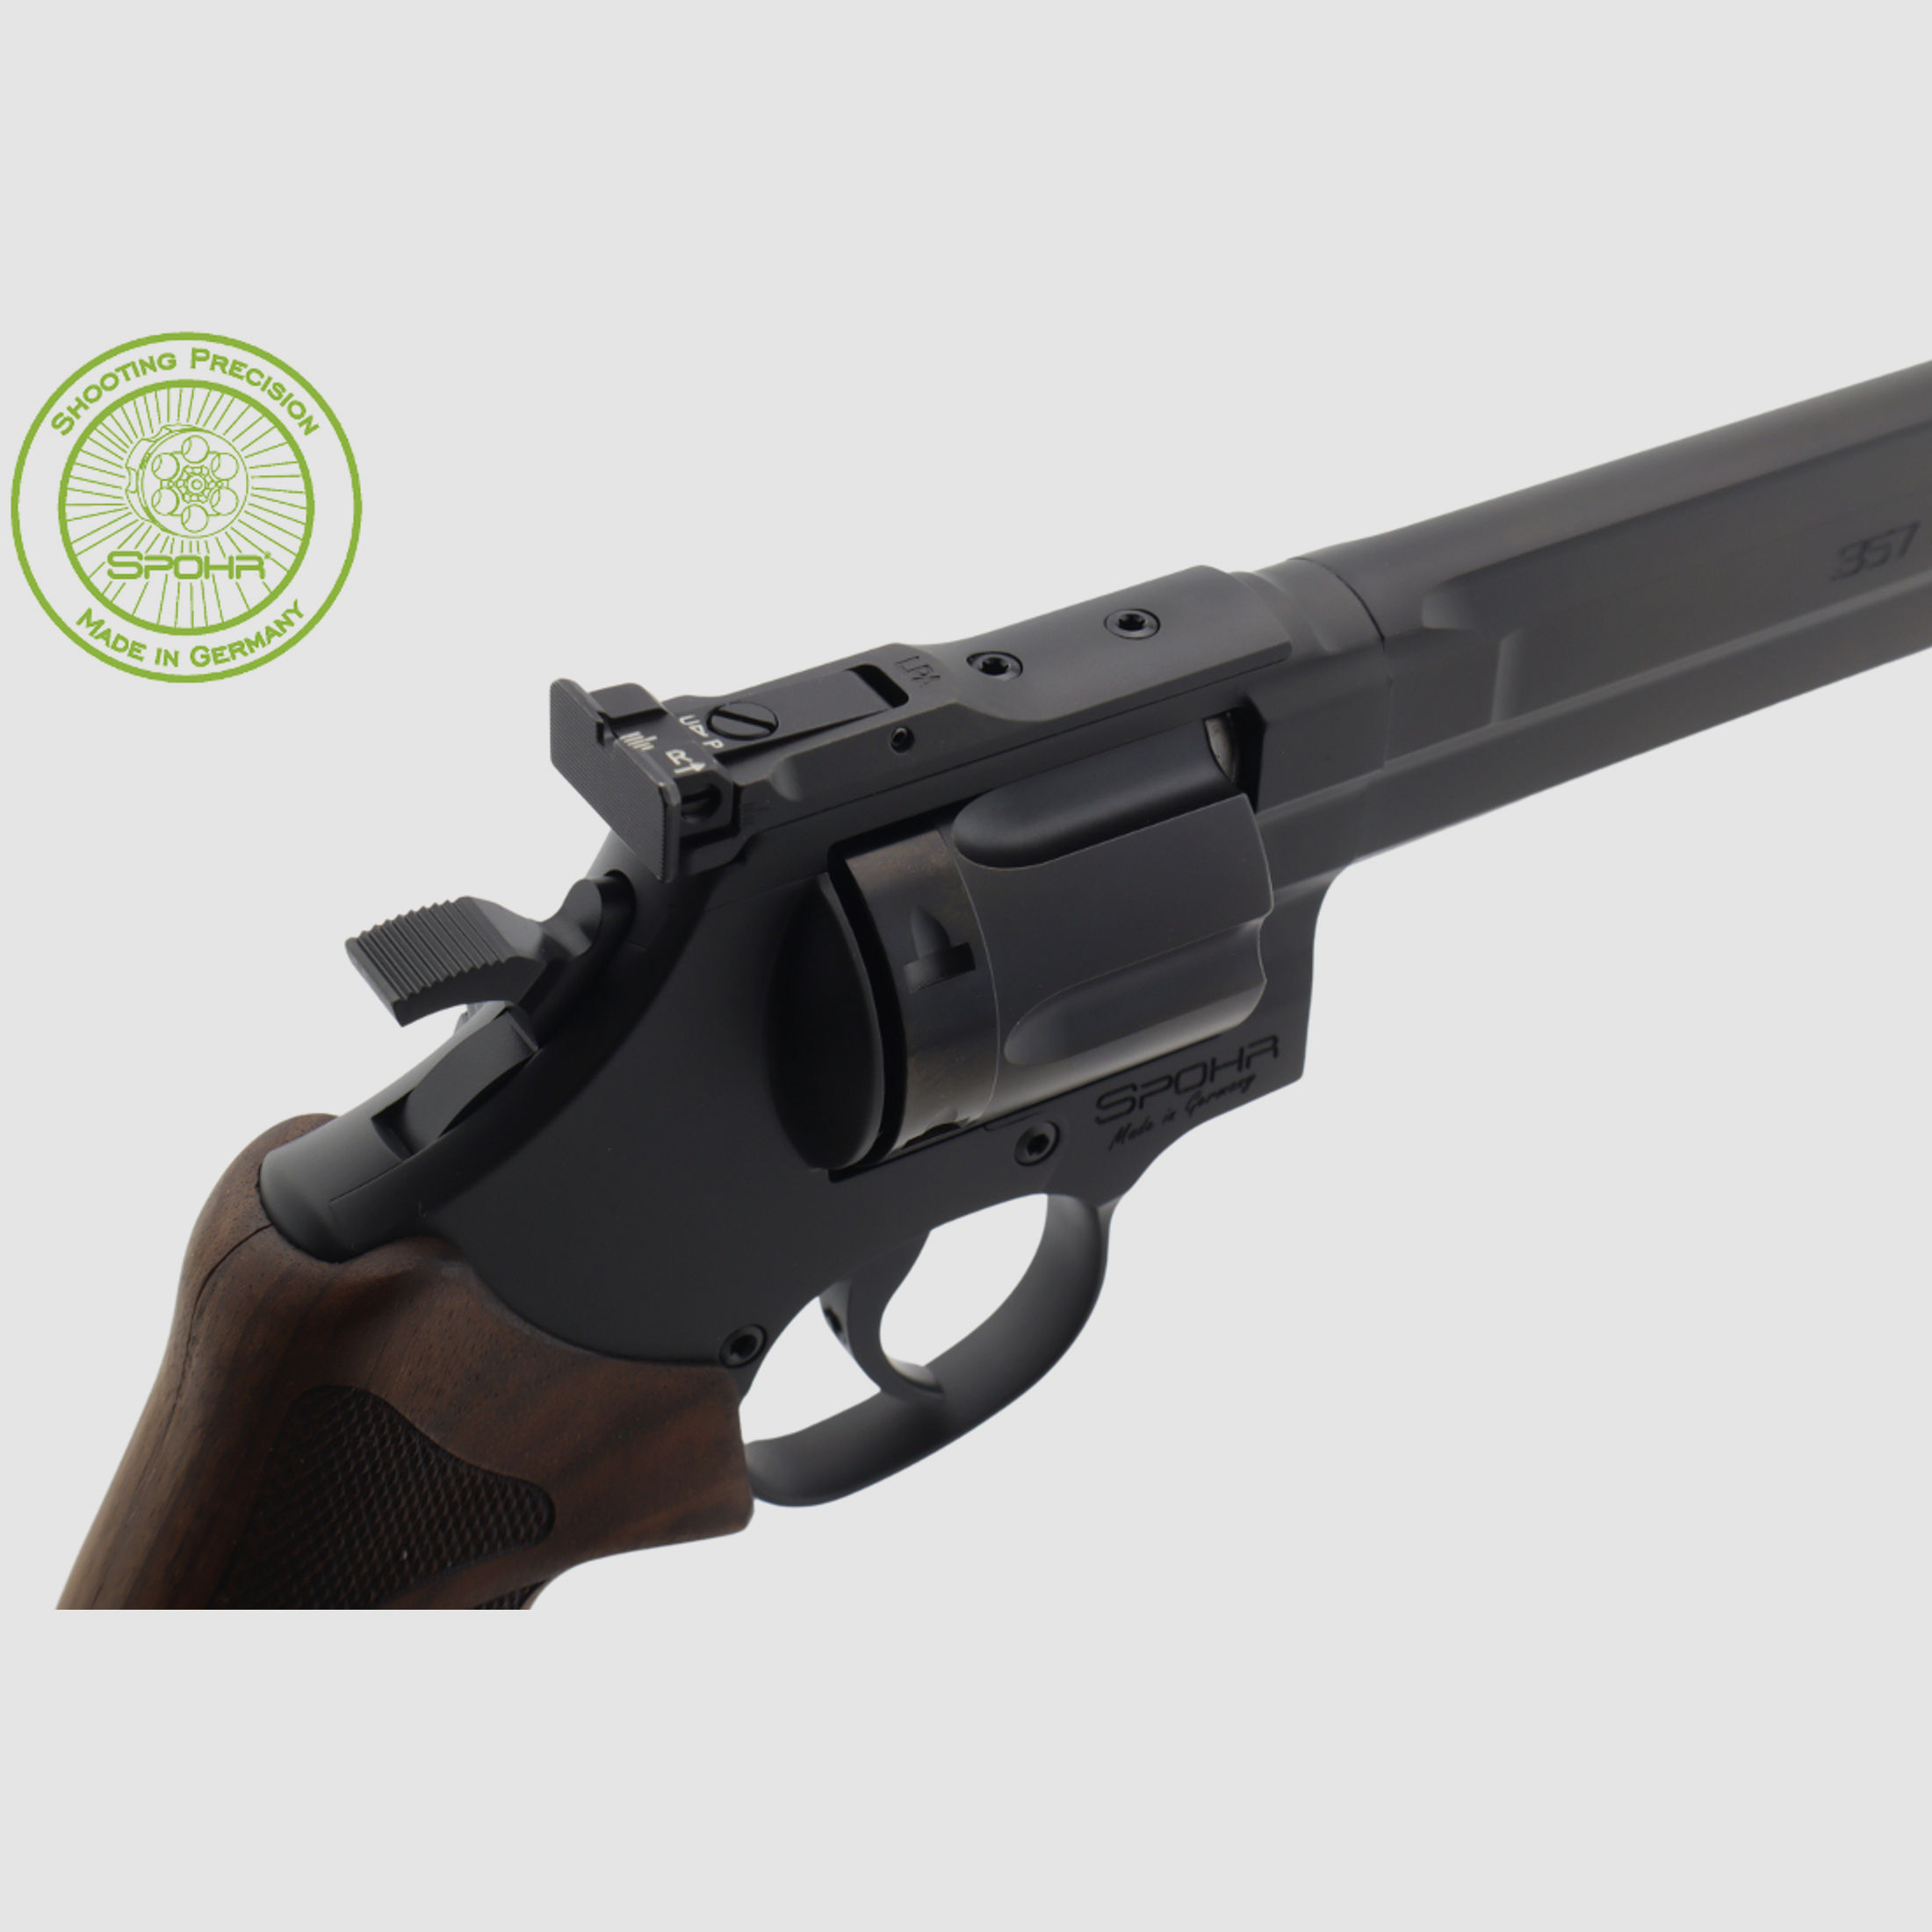 Spohr L562 Standard 6.0 Black 6" Revolver schwarz beschichtet Made in Germany 6 Zoll Sportrevolver